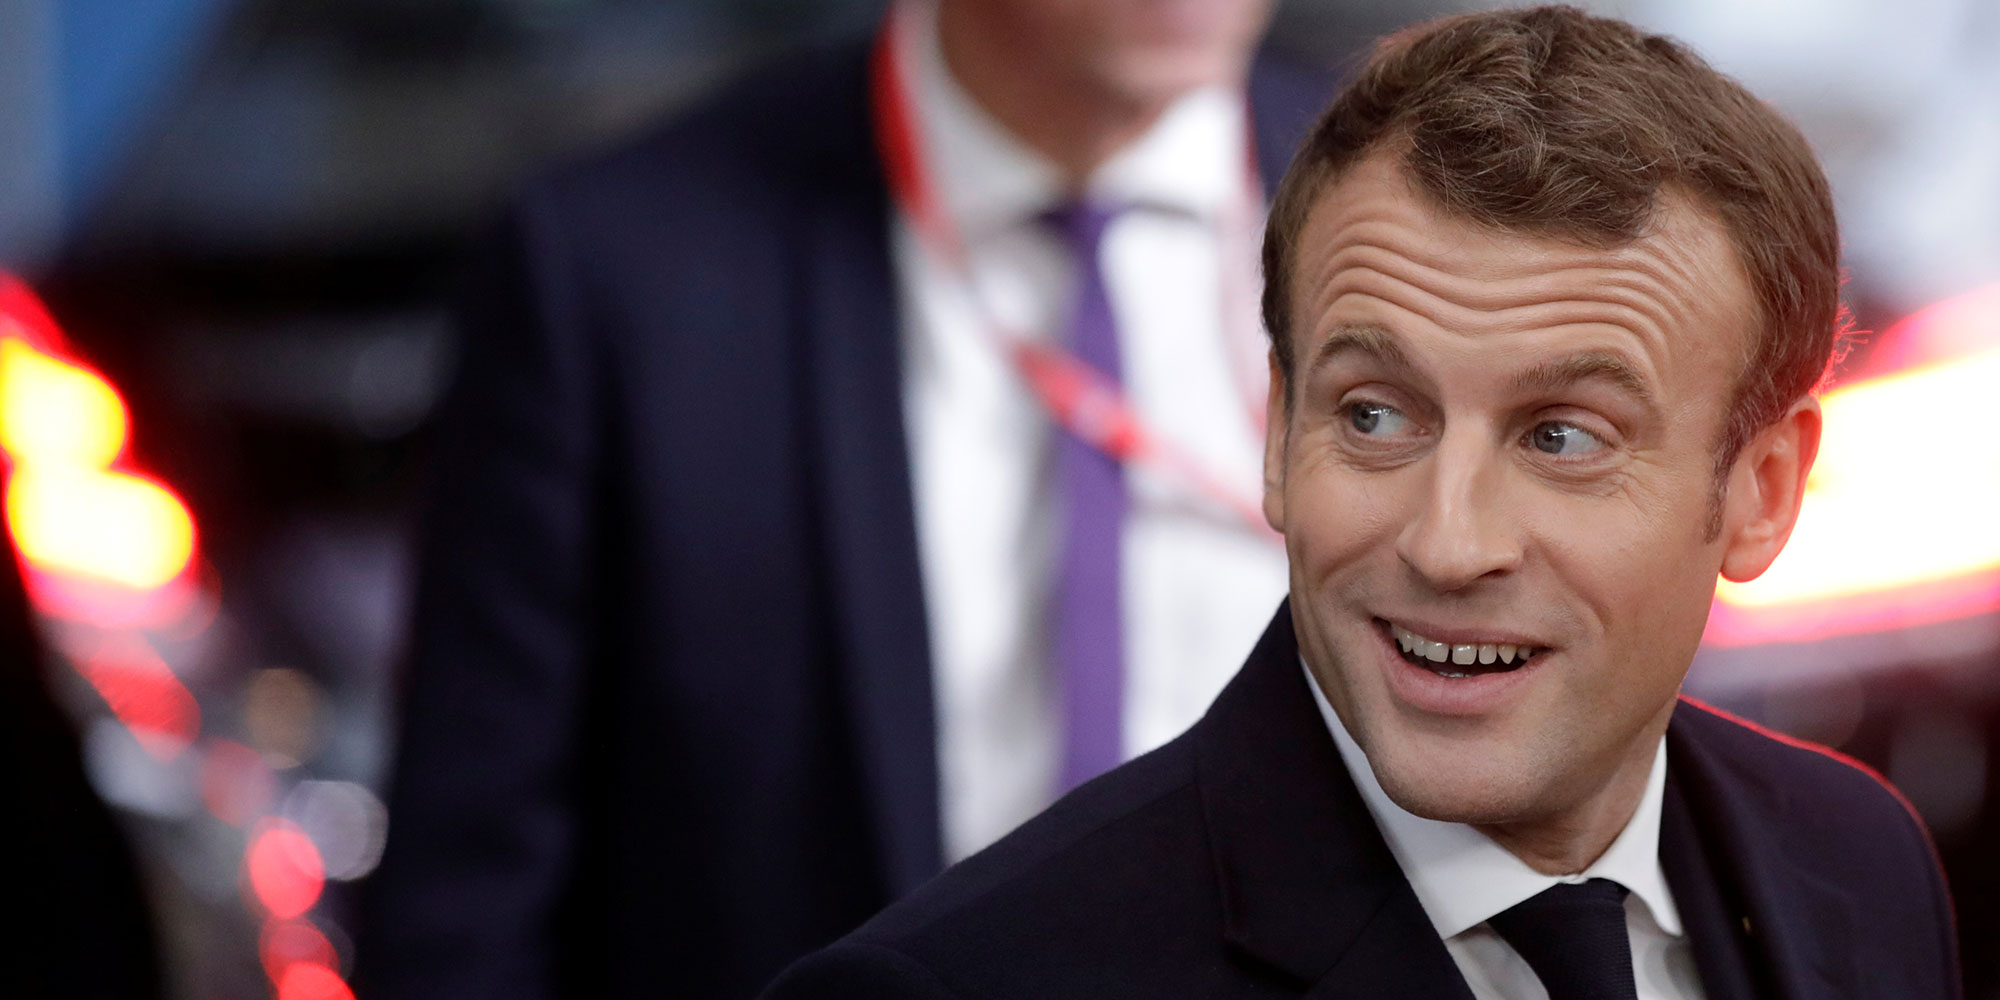 Emmanuel Macron à l'affiche d'une publicité... pour des préservatifs ?